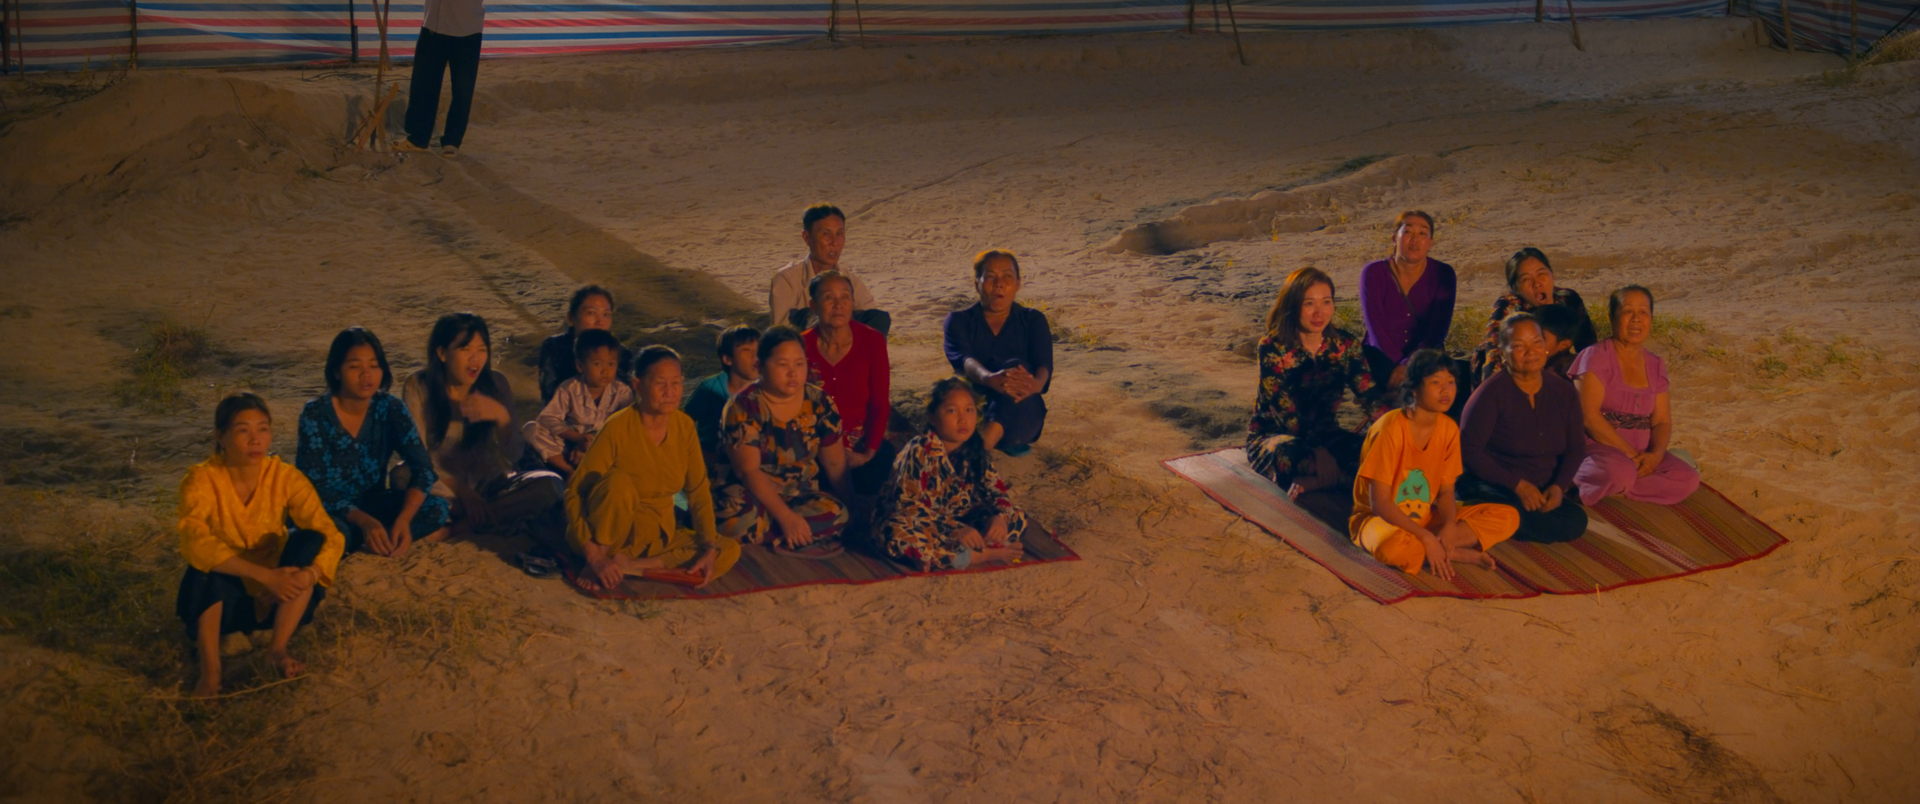 Phim Sáng Đèn tung trailer chính thức, gánh hát Viễn Phương như từ đời bước lên màn ảnh rộng - ảnh 7